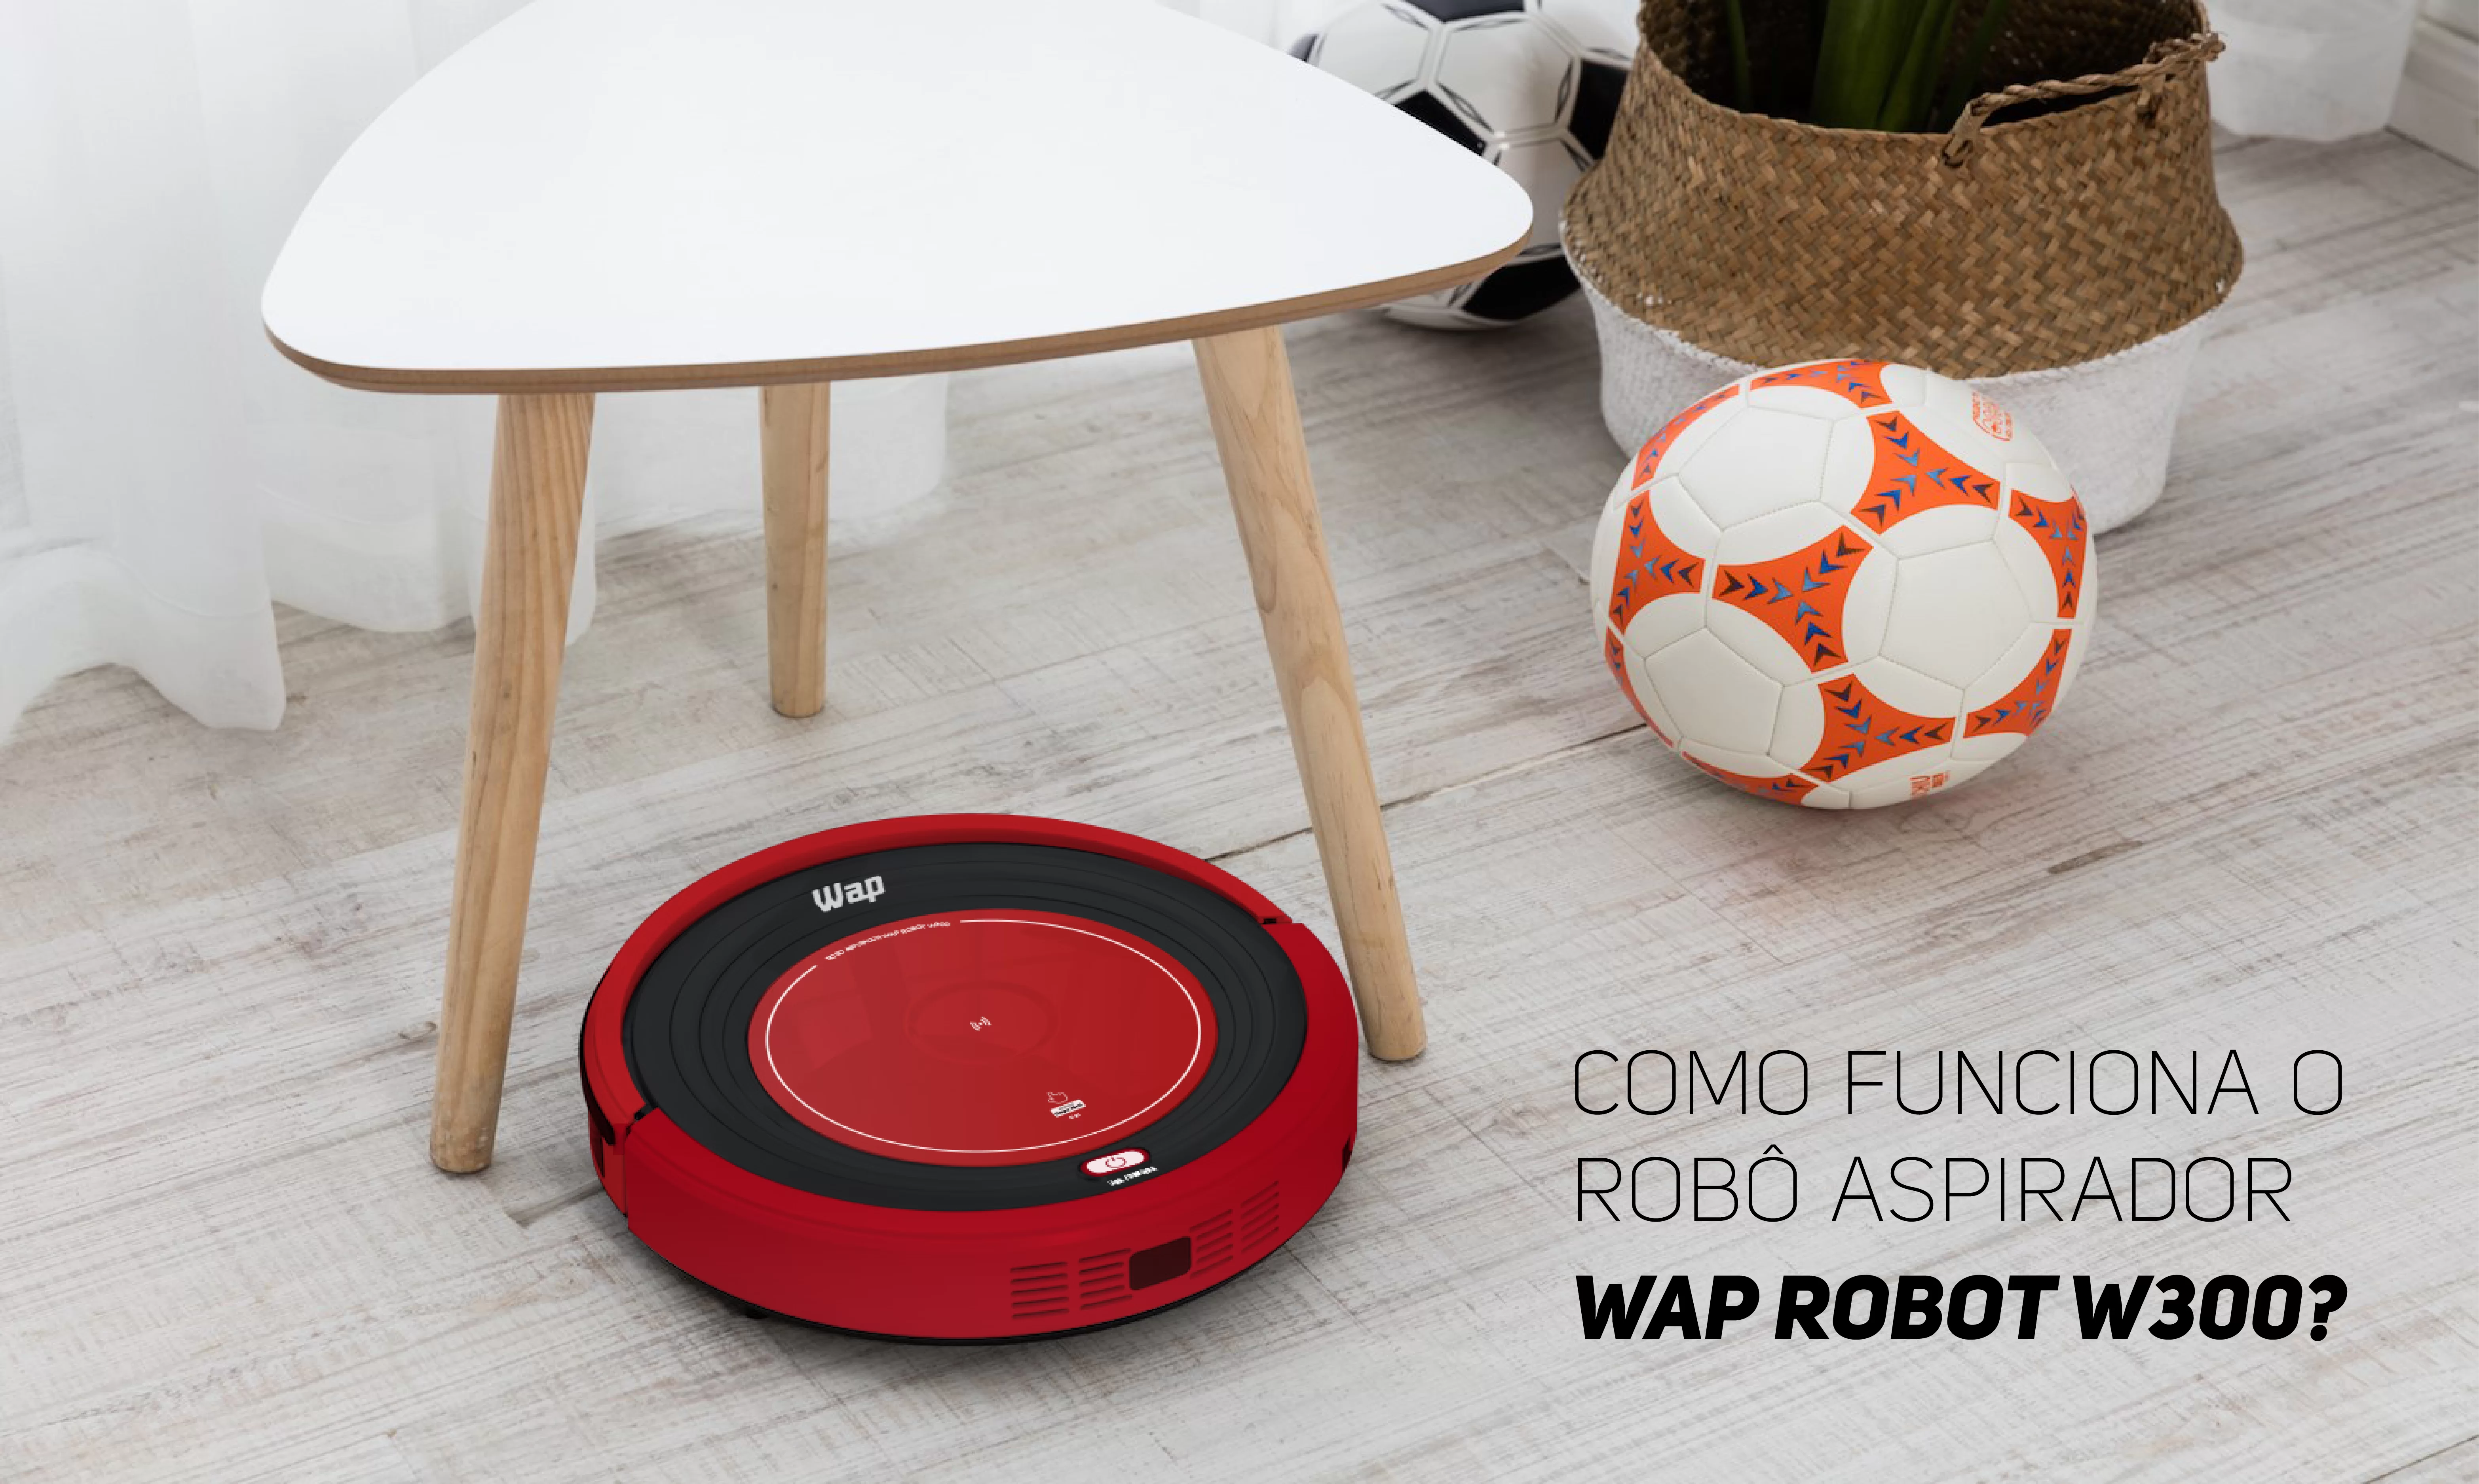 Surpreenda-se com o novo Robô Aspirador WAP Robot W2000